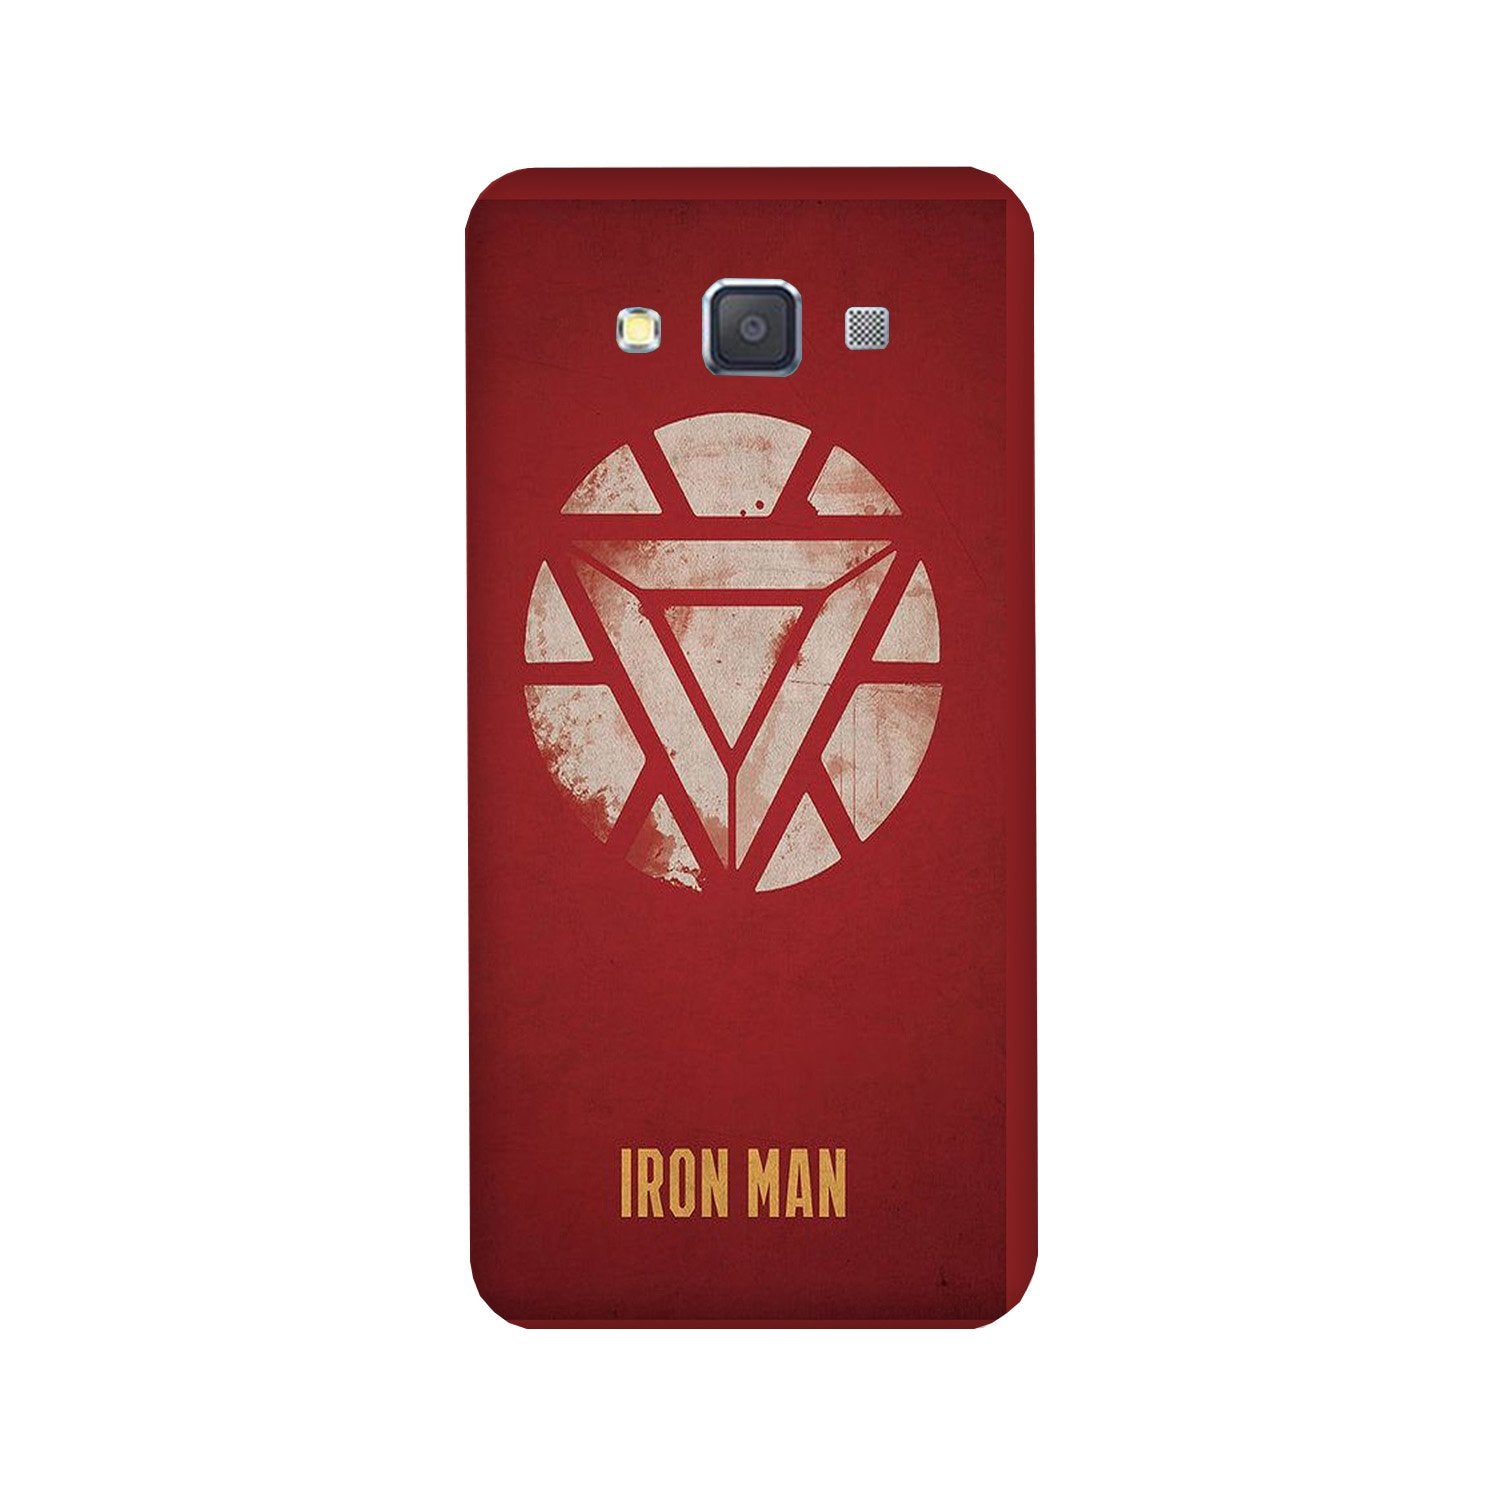 Iron Man Superhero Case for Galaxy E7(Design - 115)